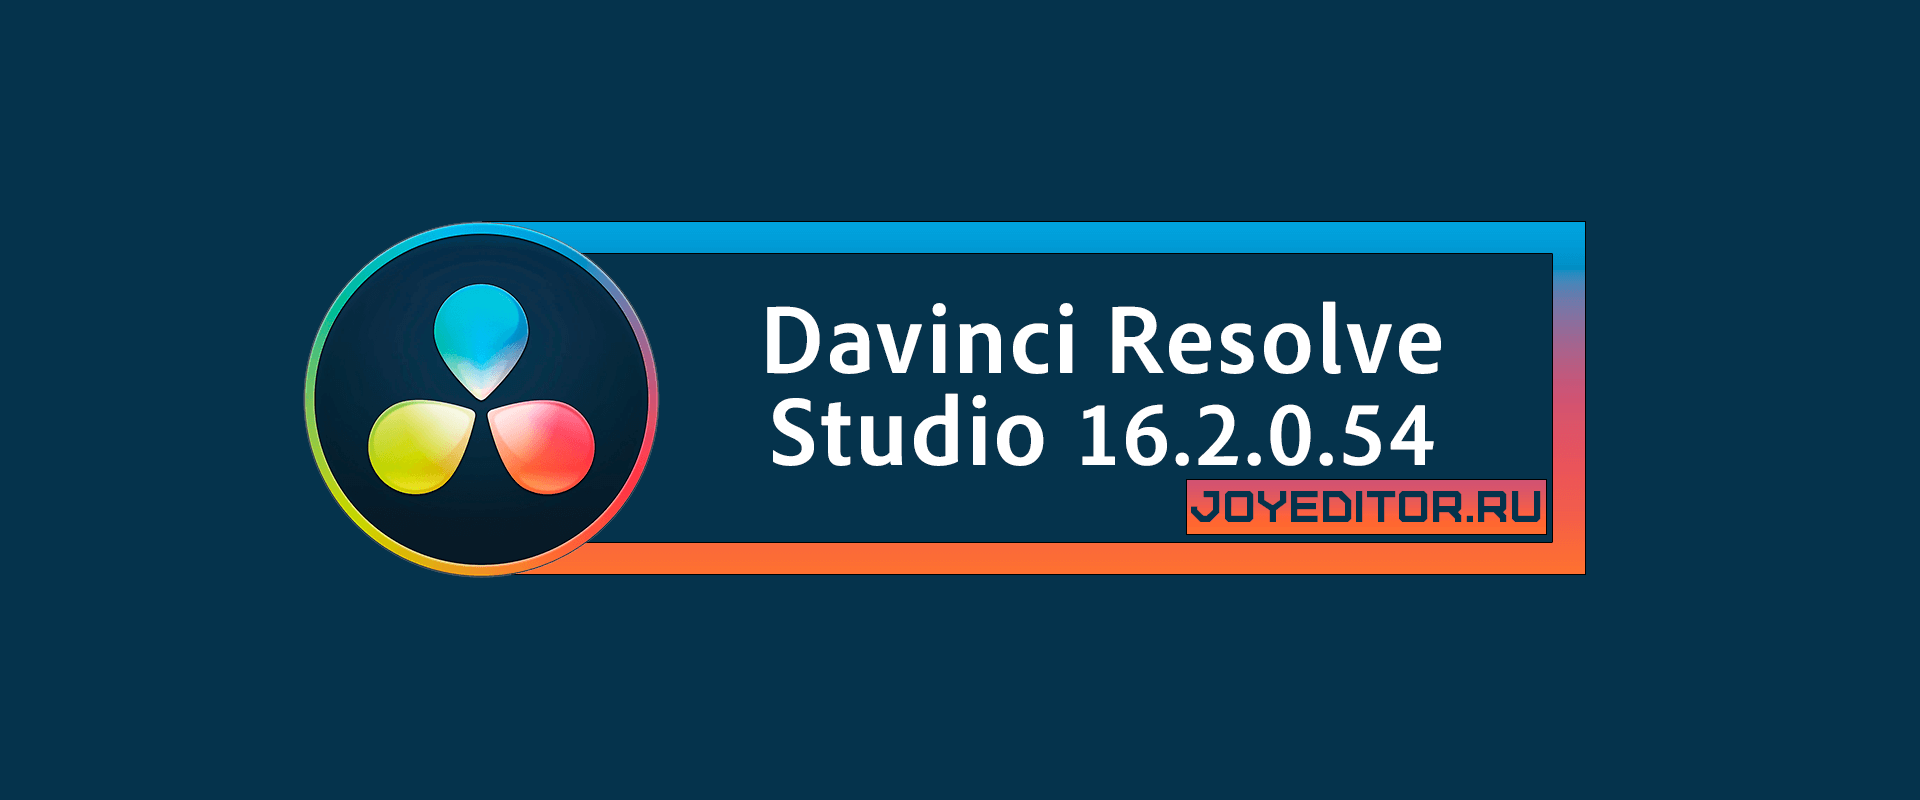 Davinci Resolve Studio 16.2.0.54